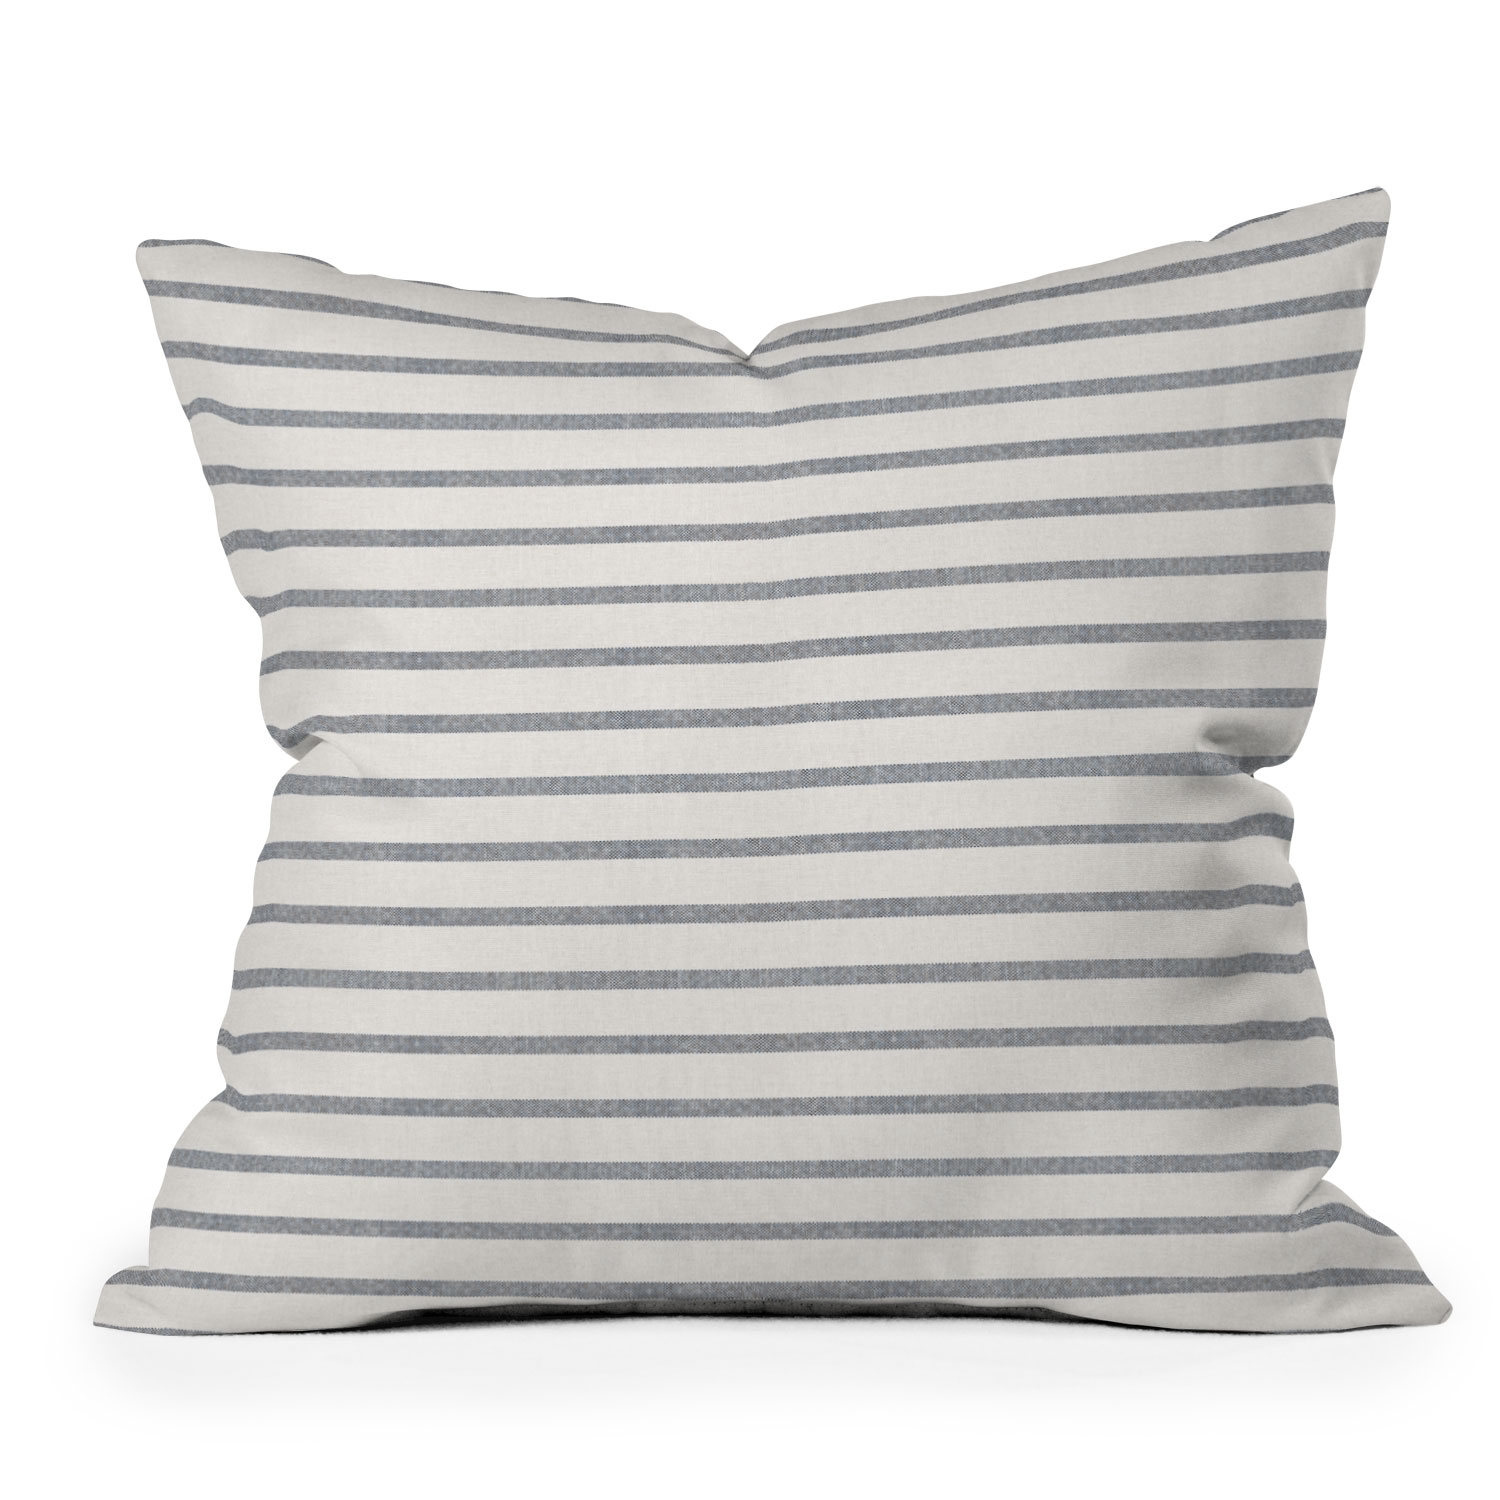 Outdoor Throw Pillow, Dhurban Stripe, 18" x 18" - Image 0